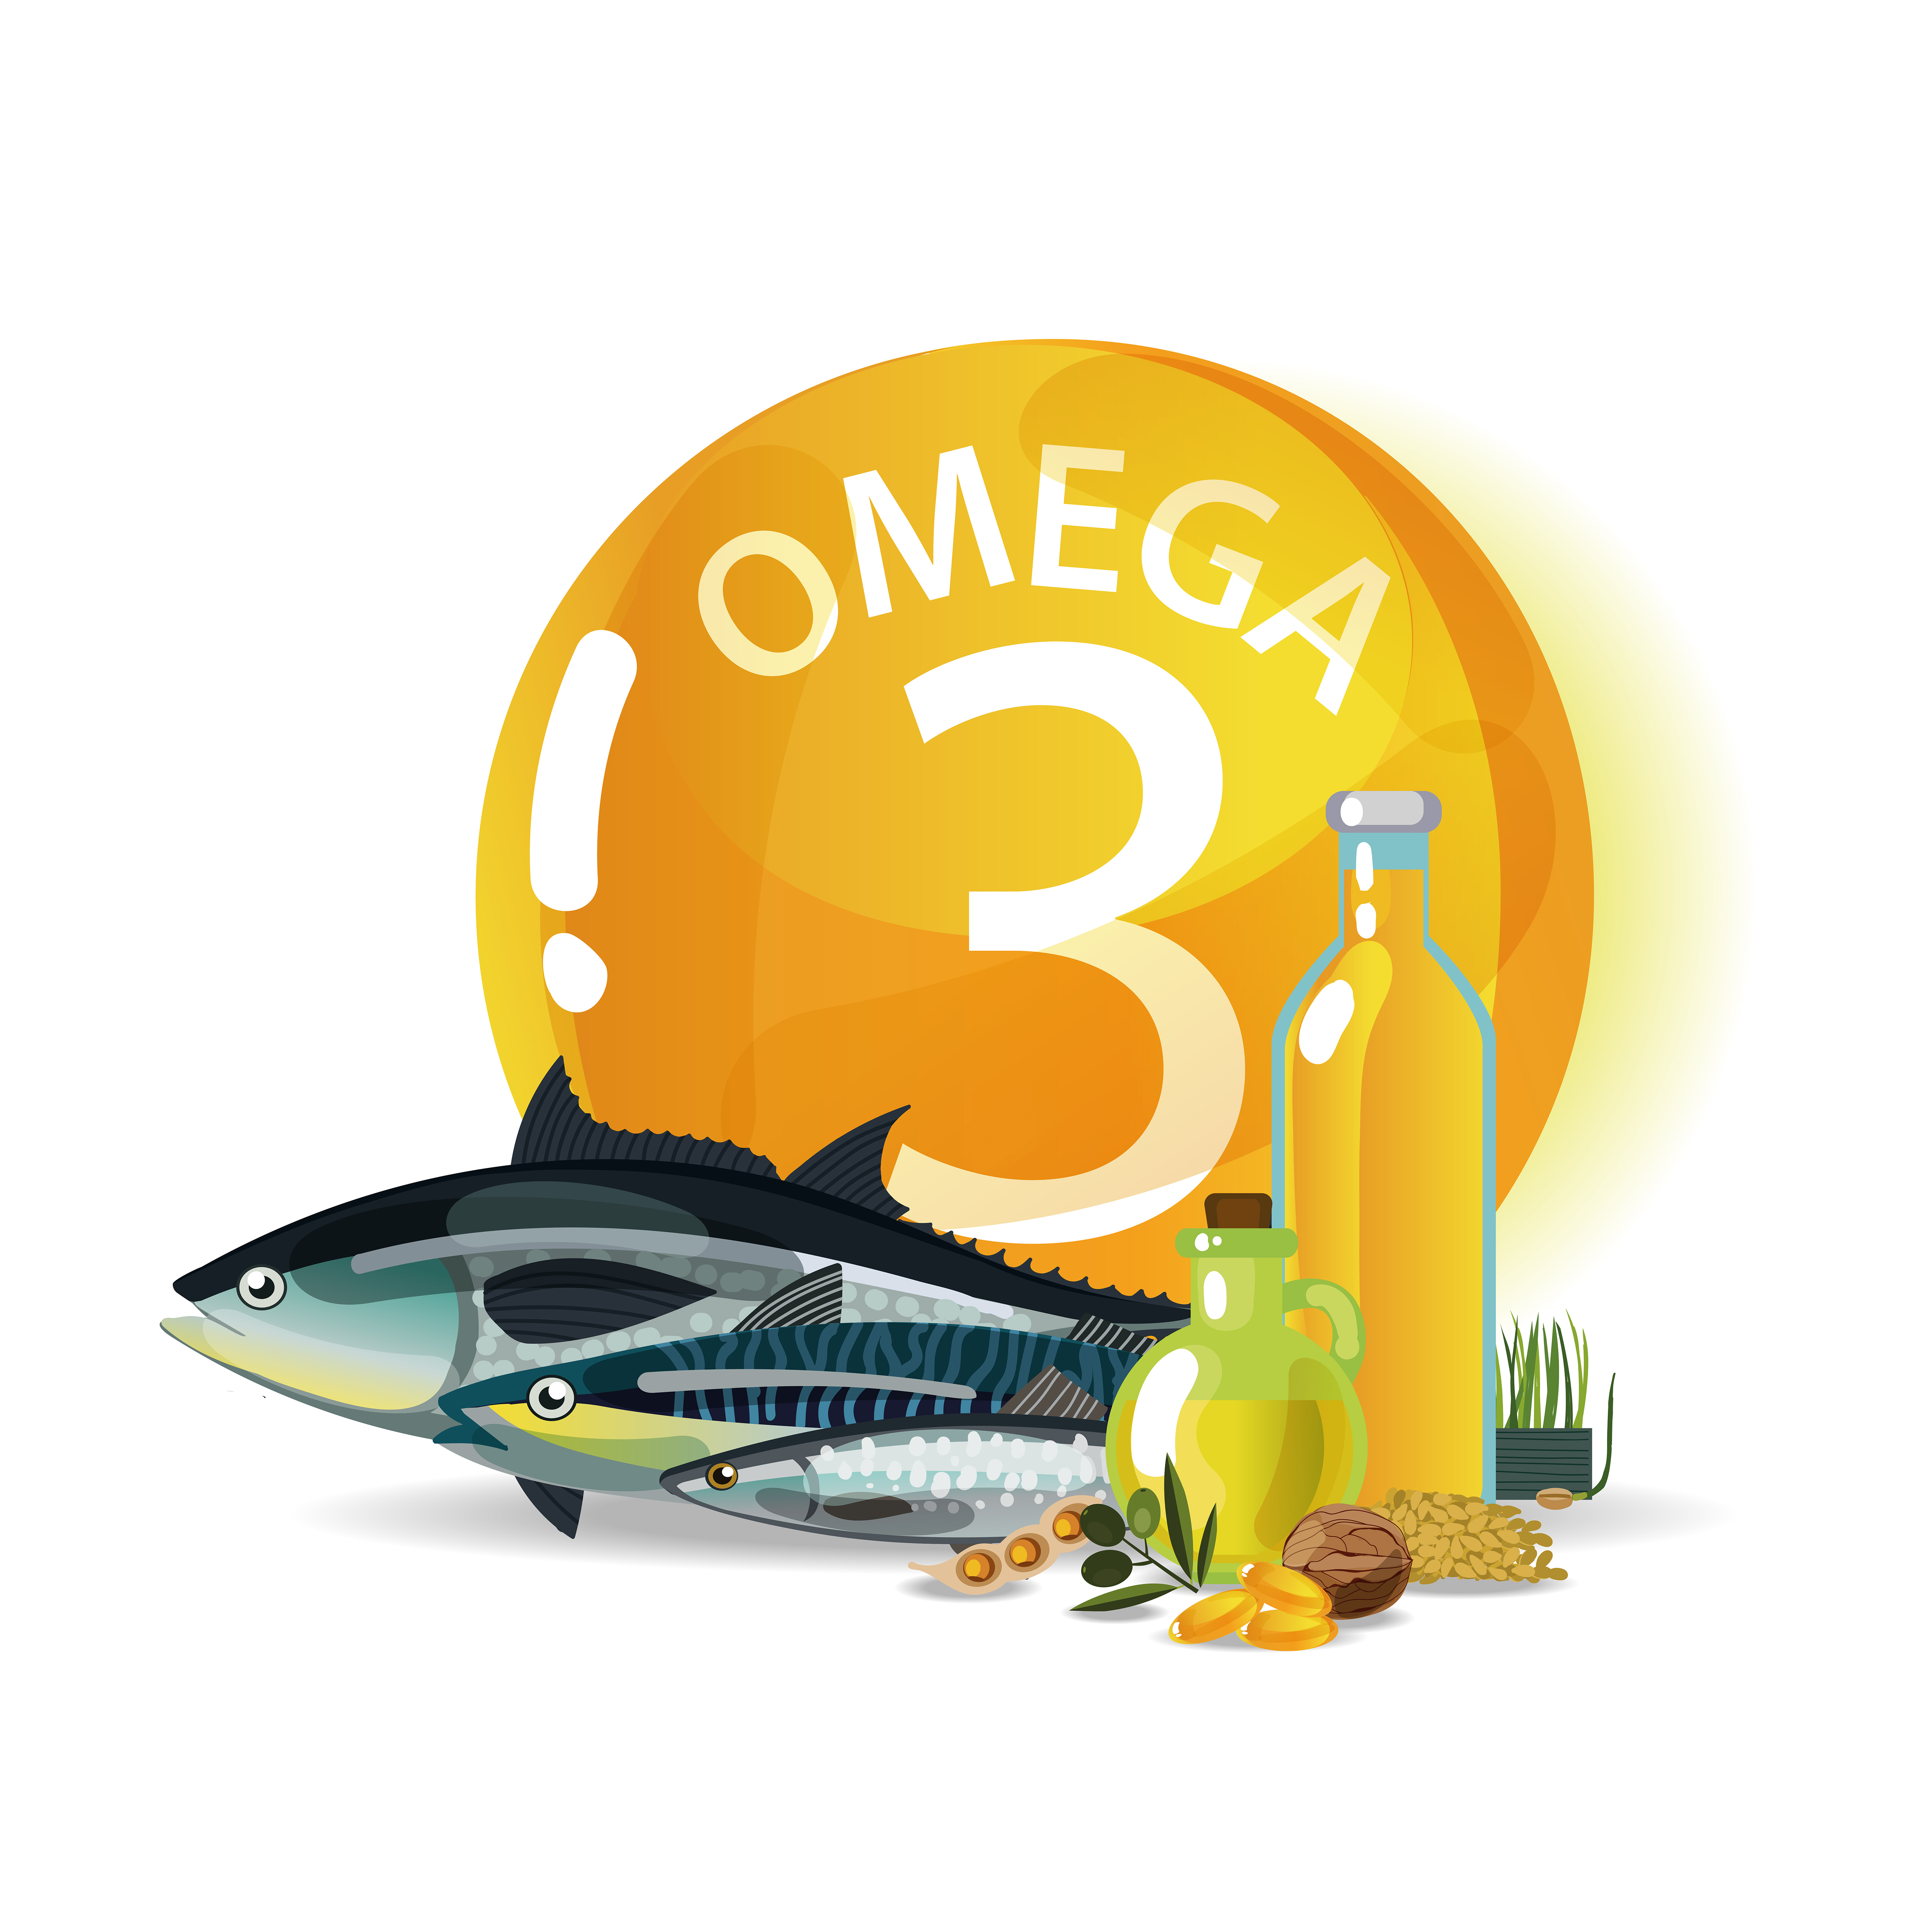 Omega 3 Podcast